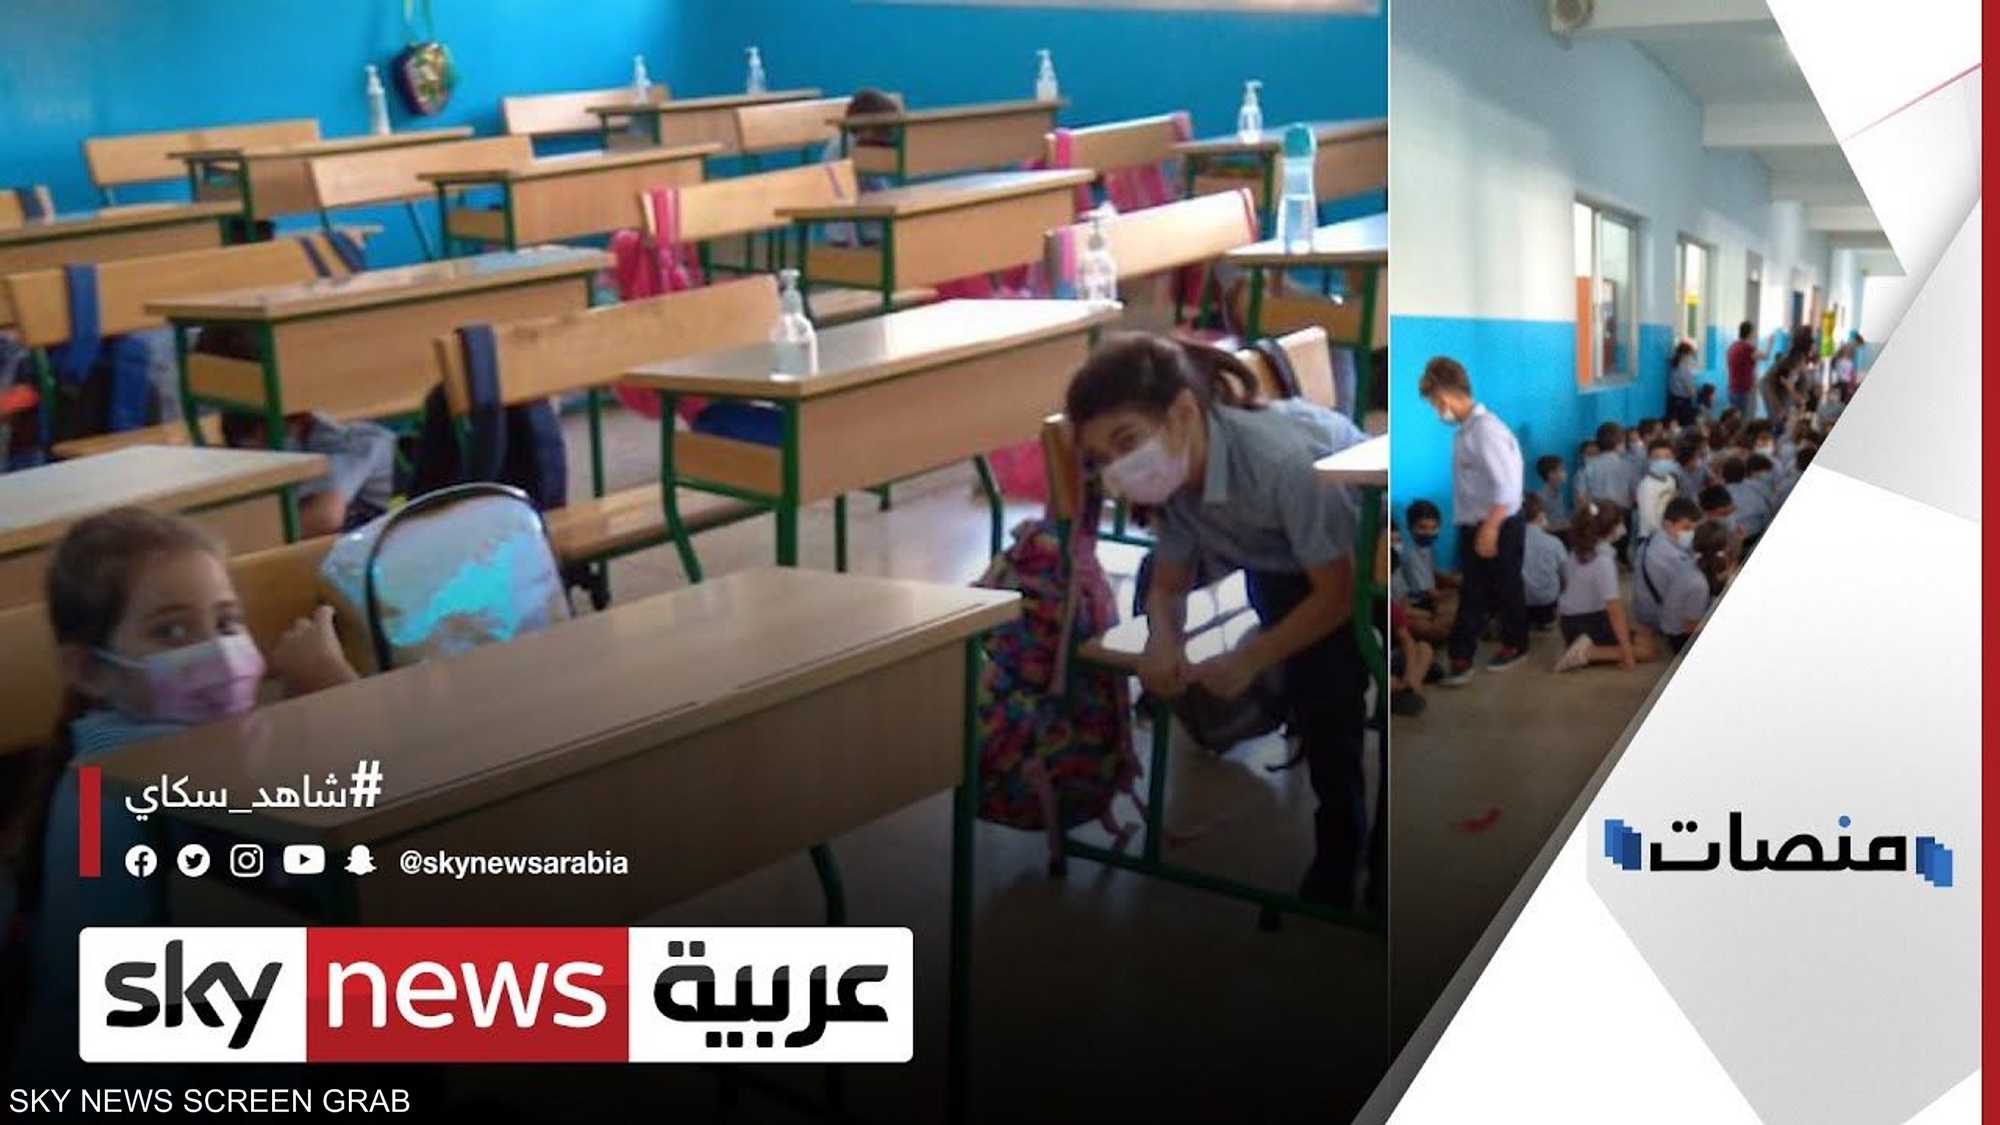 وسط الرصاص.. أطفال لبنان يحتمون تحت الطاولات الدراسية